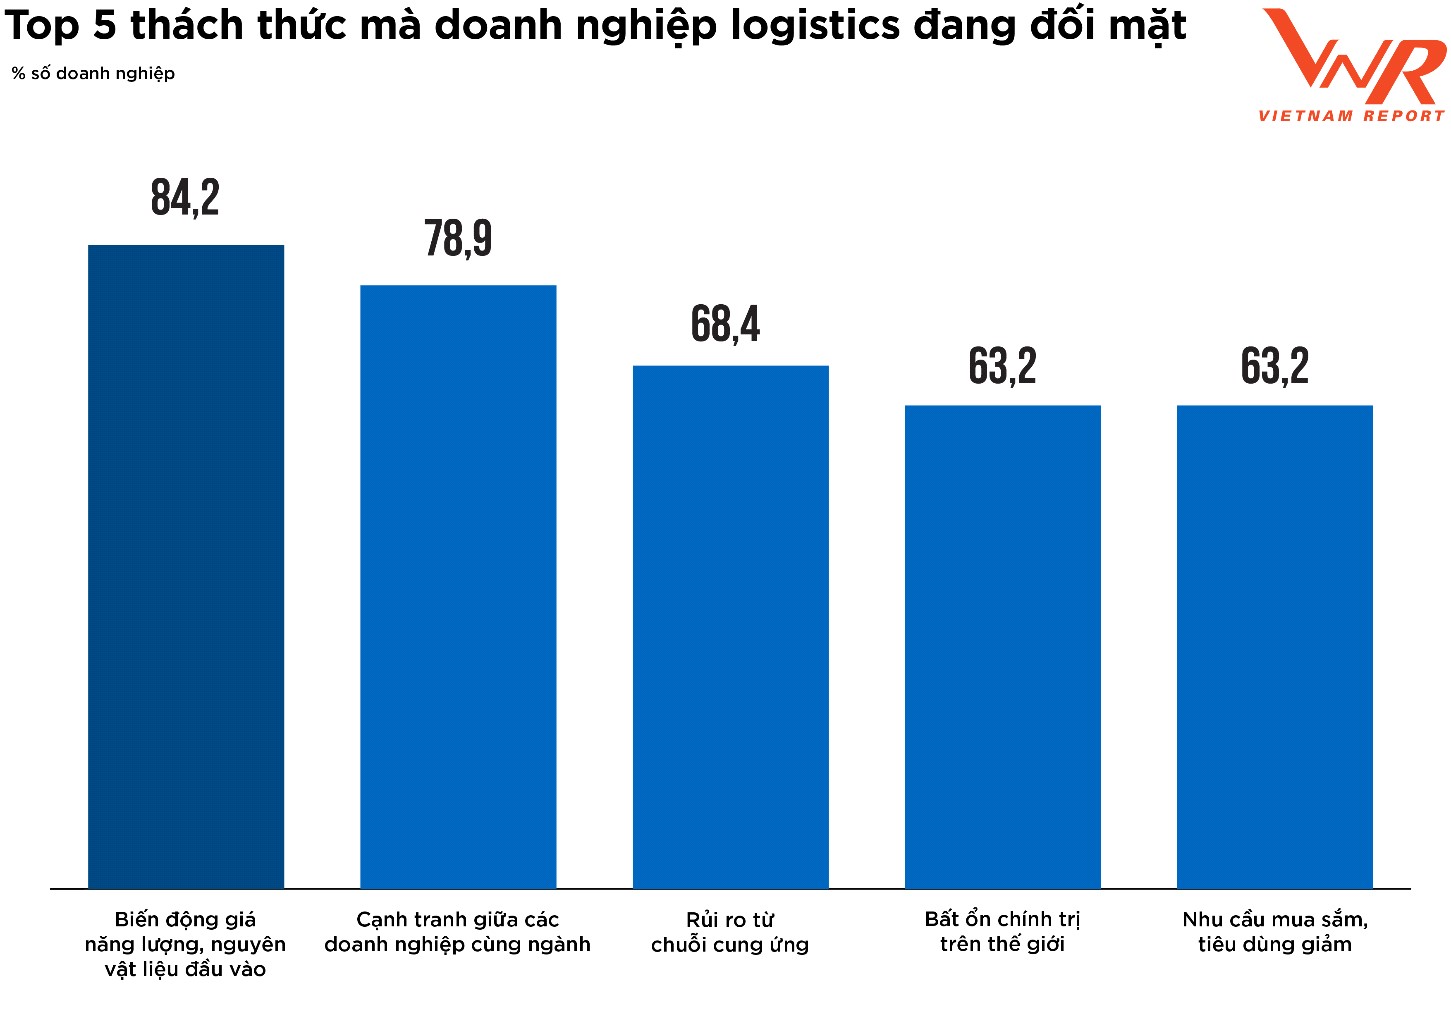 Top 5 thách thức đối với doanh nghiệp logistics